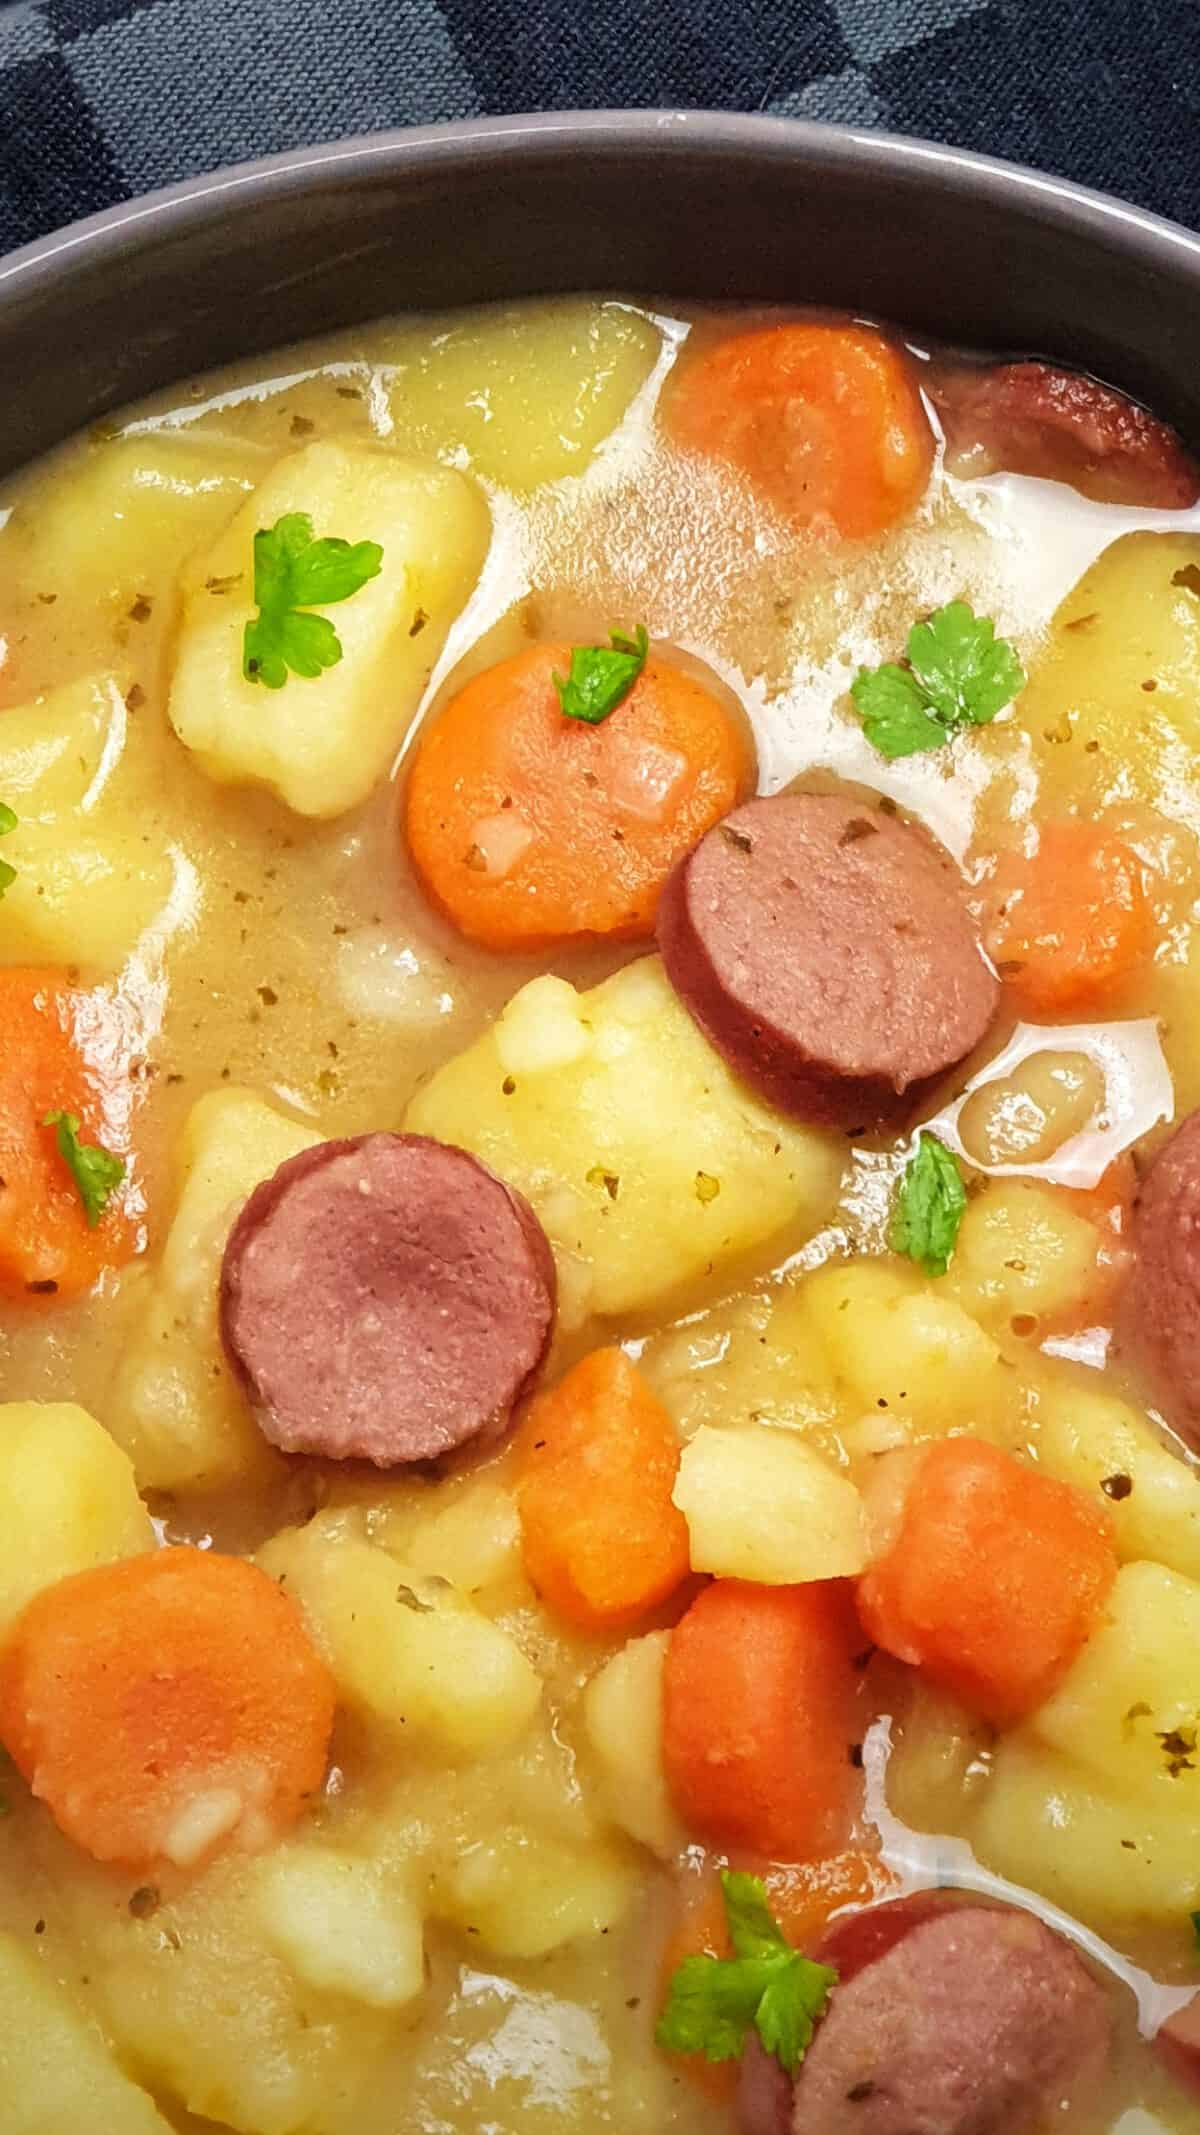 Kartoffel-Möhren-Eintopf mit Rindswurst | Lydiasfoodblog